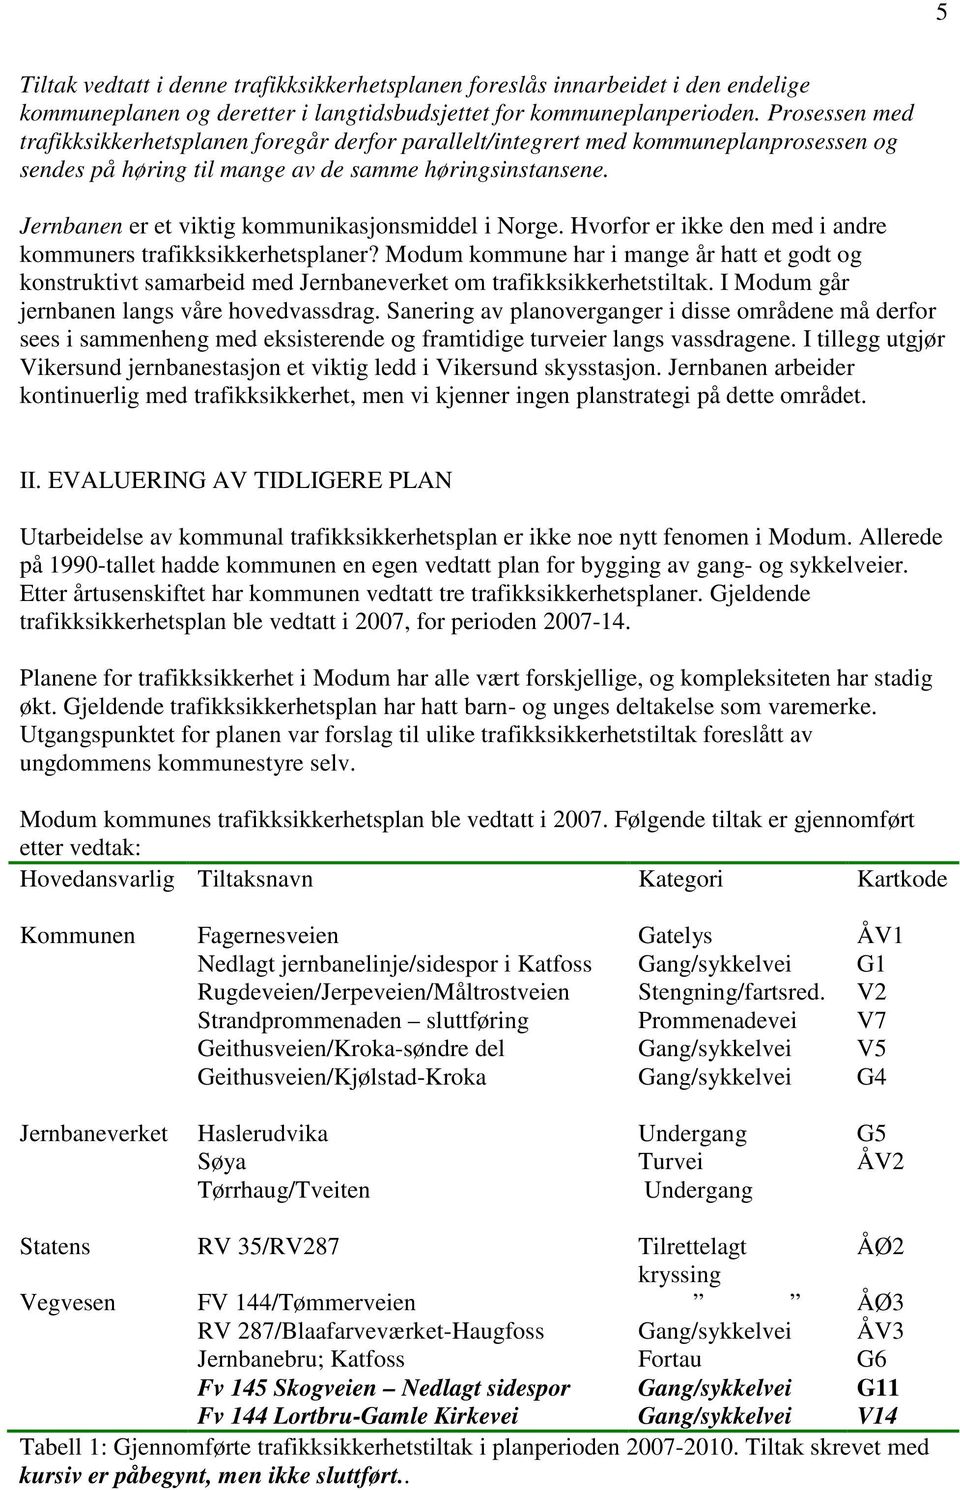 Jernbanen er et viktig kommunikasjonsmiddel i Norge. Hvorfor er ikke den med i andre kommuners trafikksikkerhetsplaner?